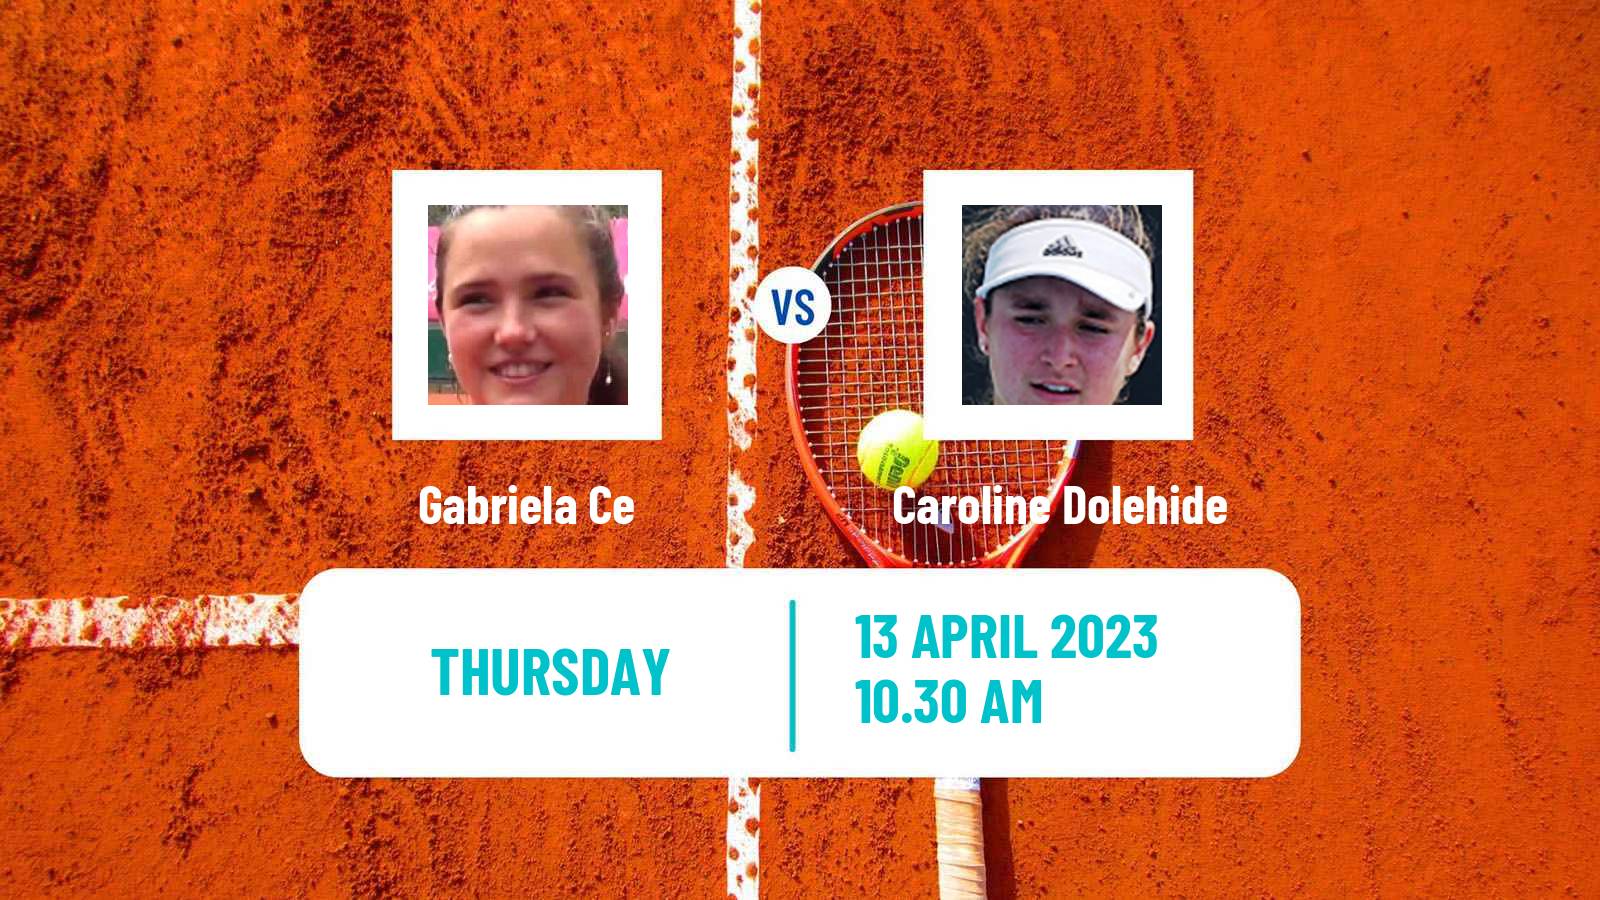 Tennis ITF Tournaments Gabriela Ce - Caroline Dolehide